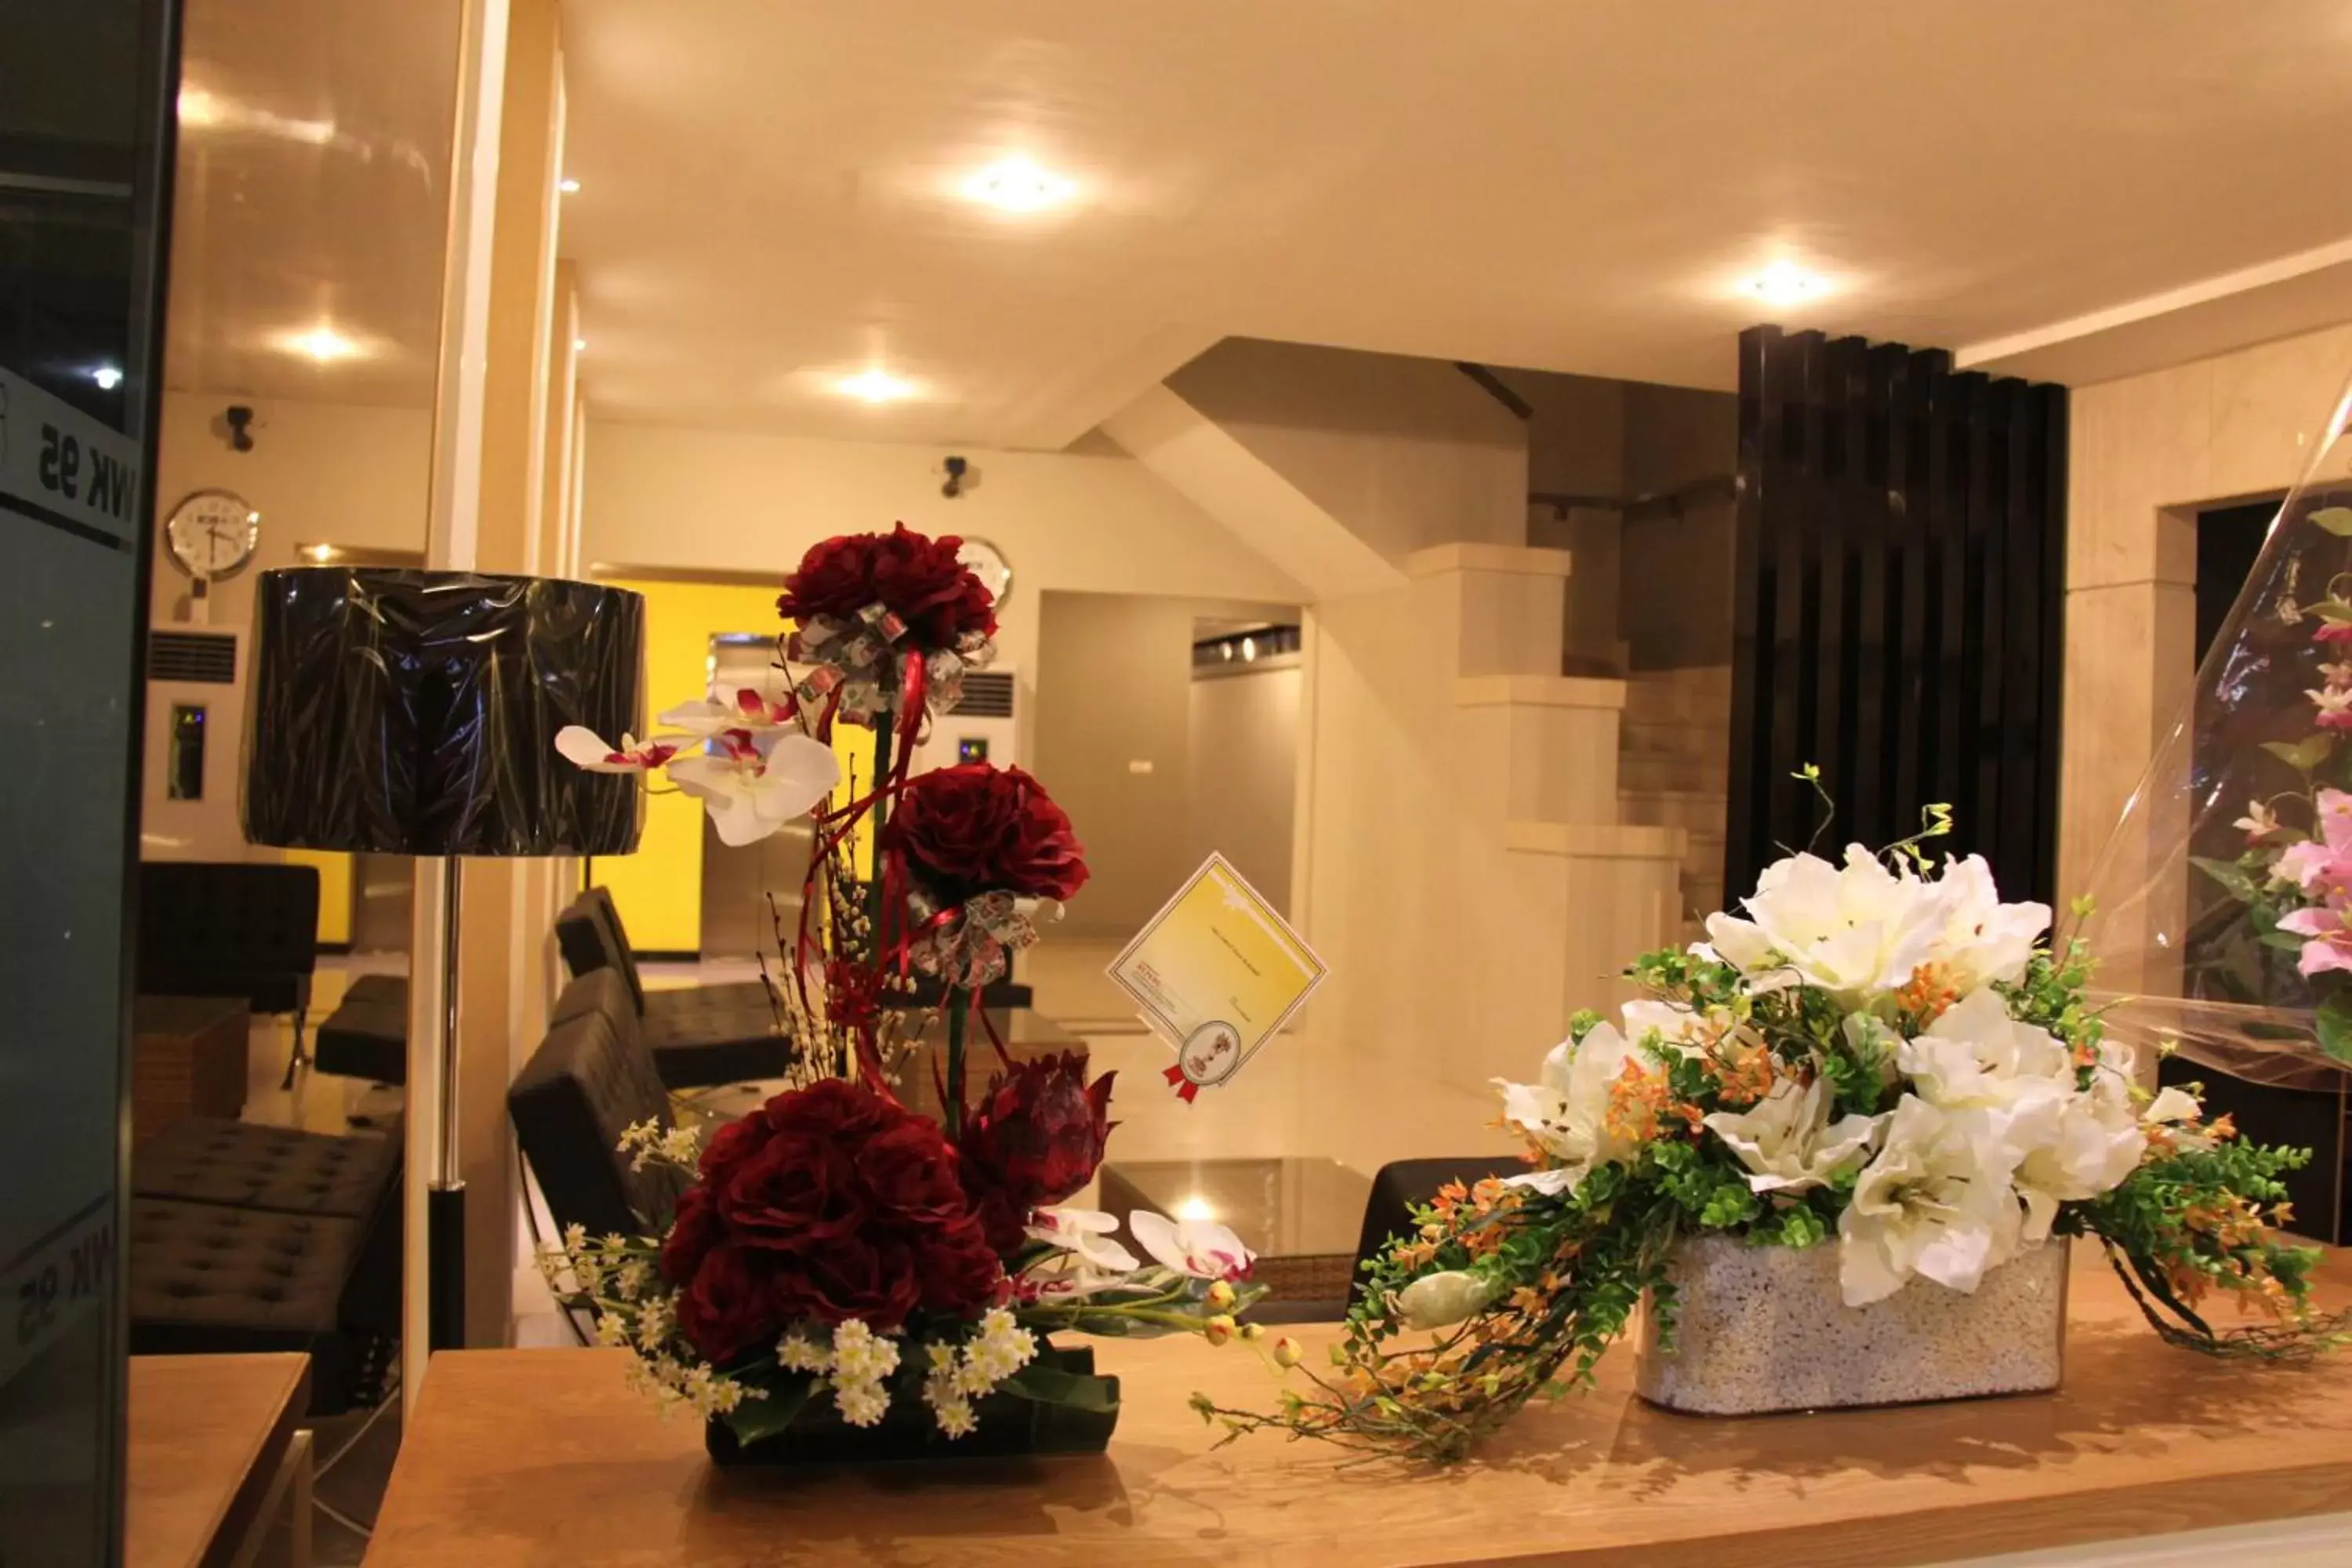 Lobby or reception in SWK 95 Hotel